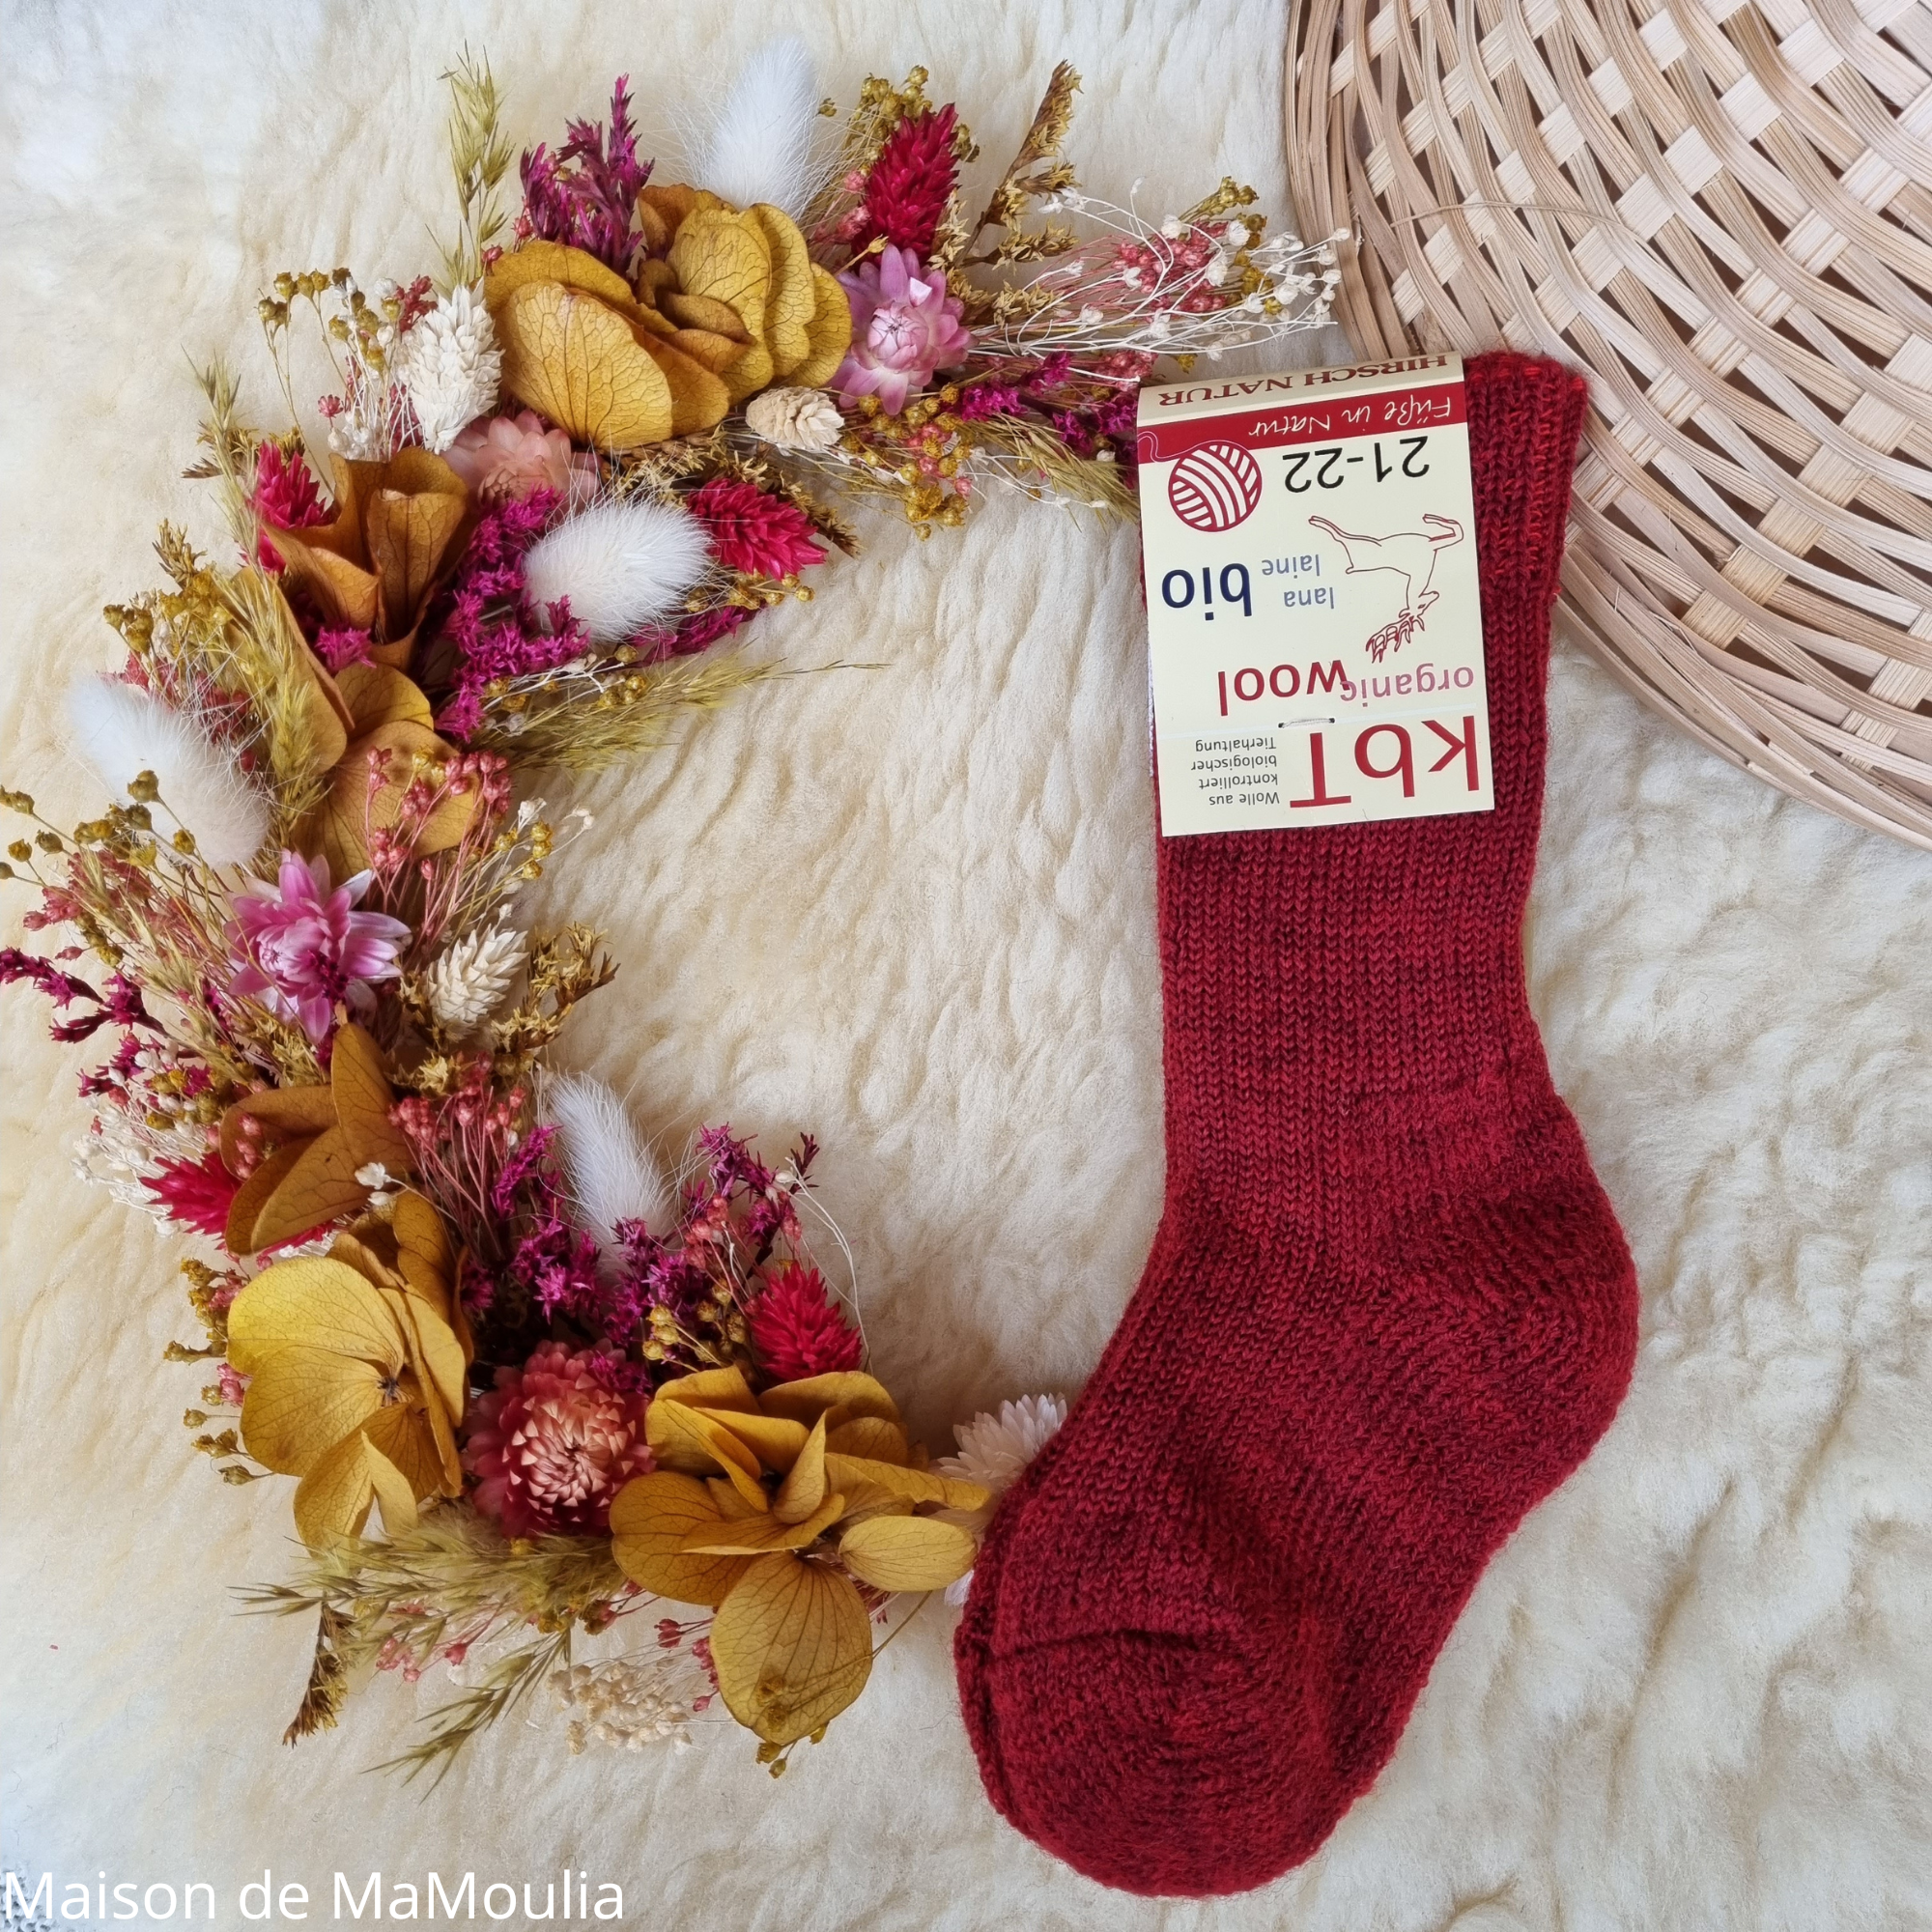 11-chaussettes-chaudes-pure-laine-bio-ecologique-hirsch-natur-bebe-enfant-maison-de-mamoulia -tres-epaisses-rouge--